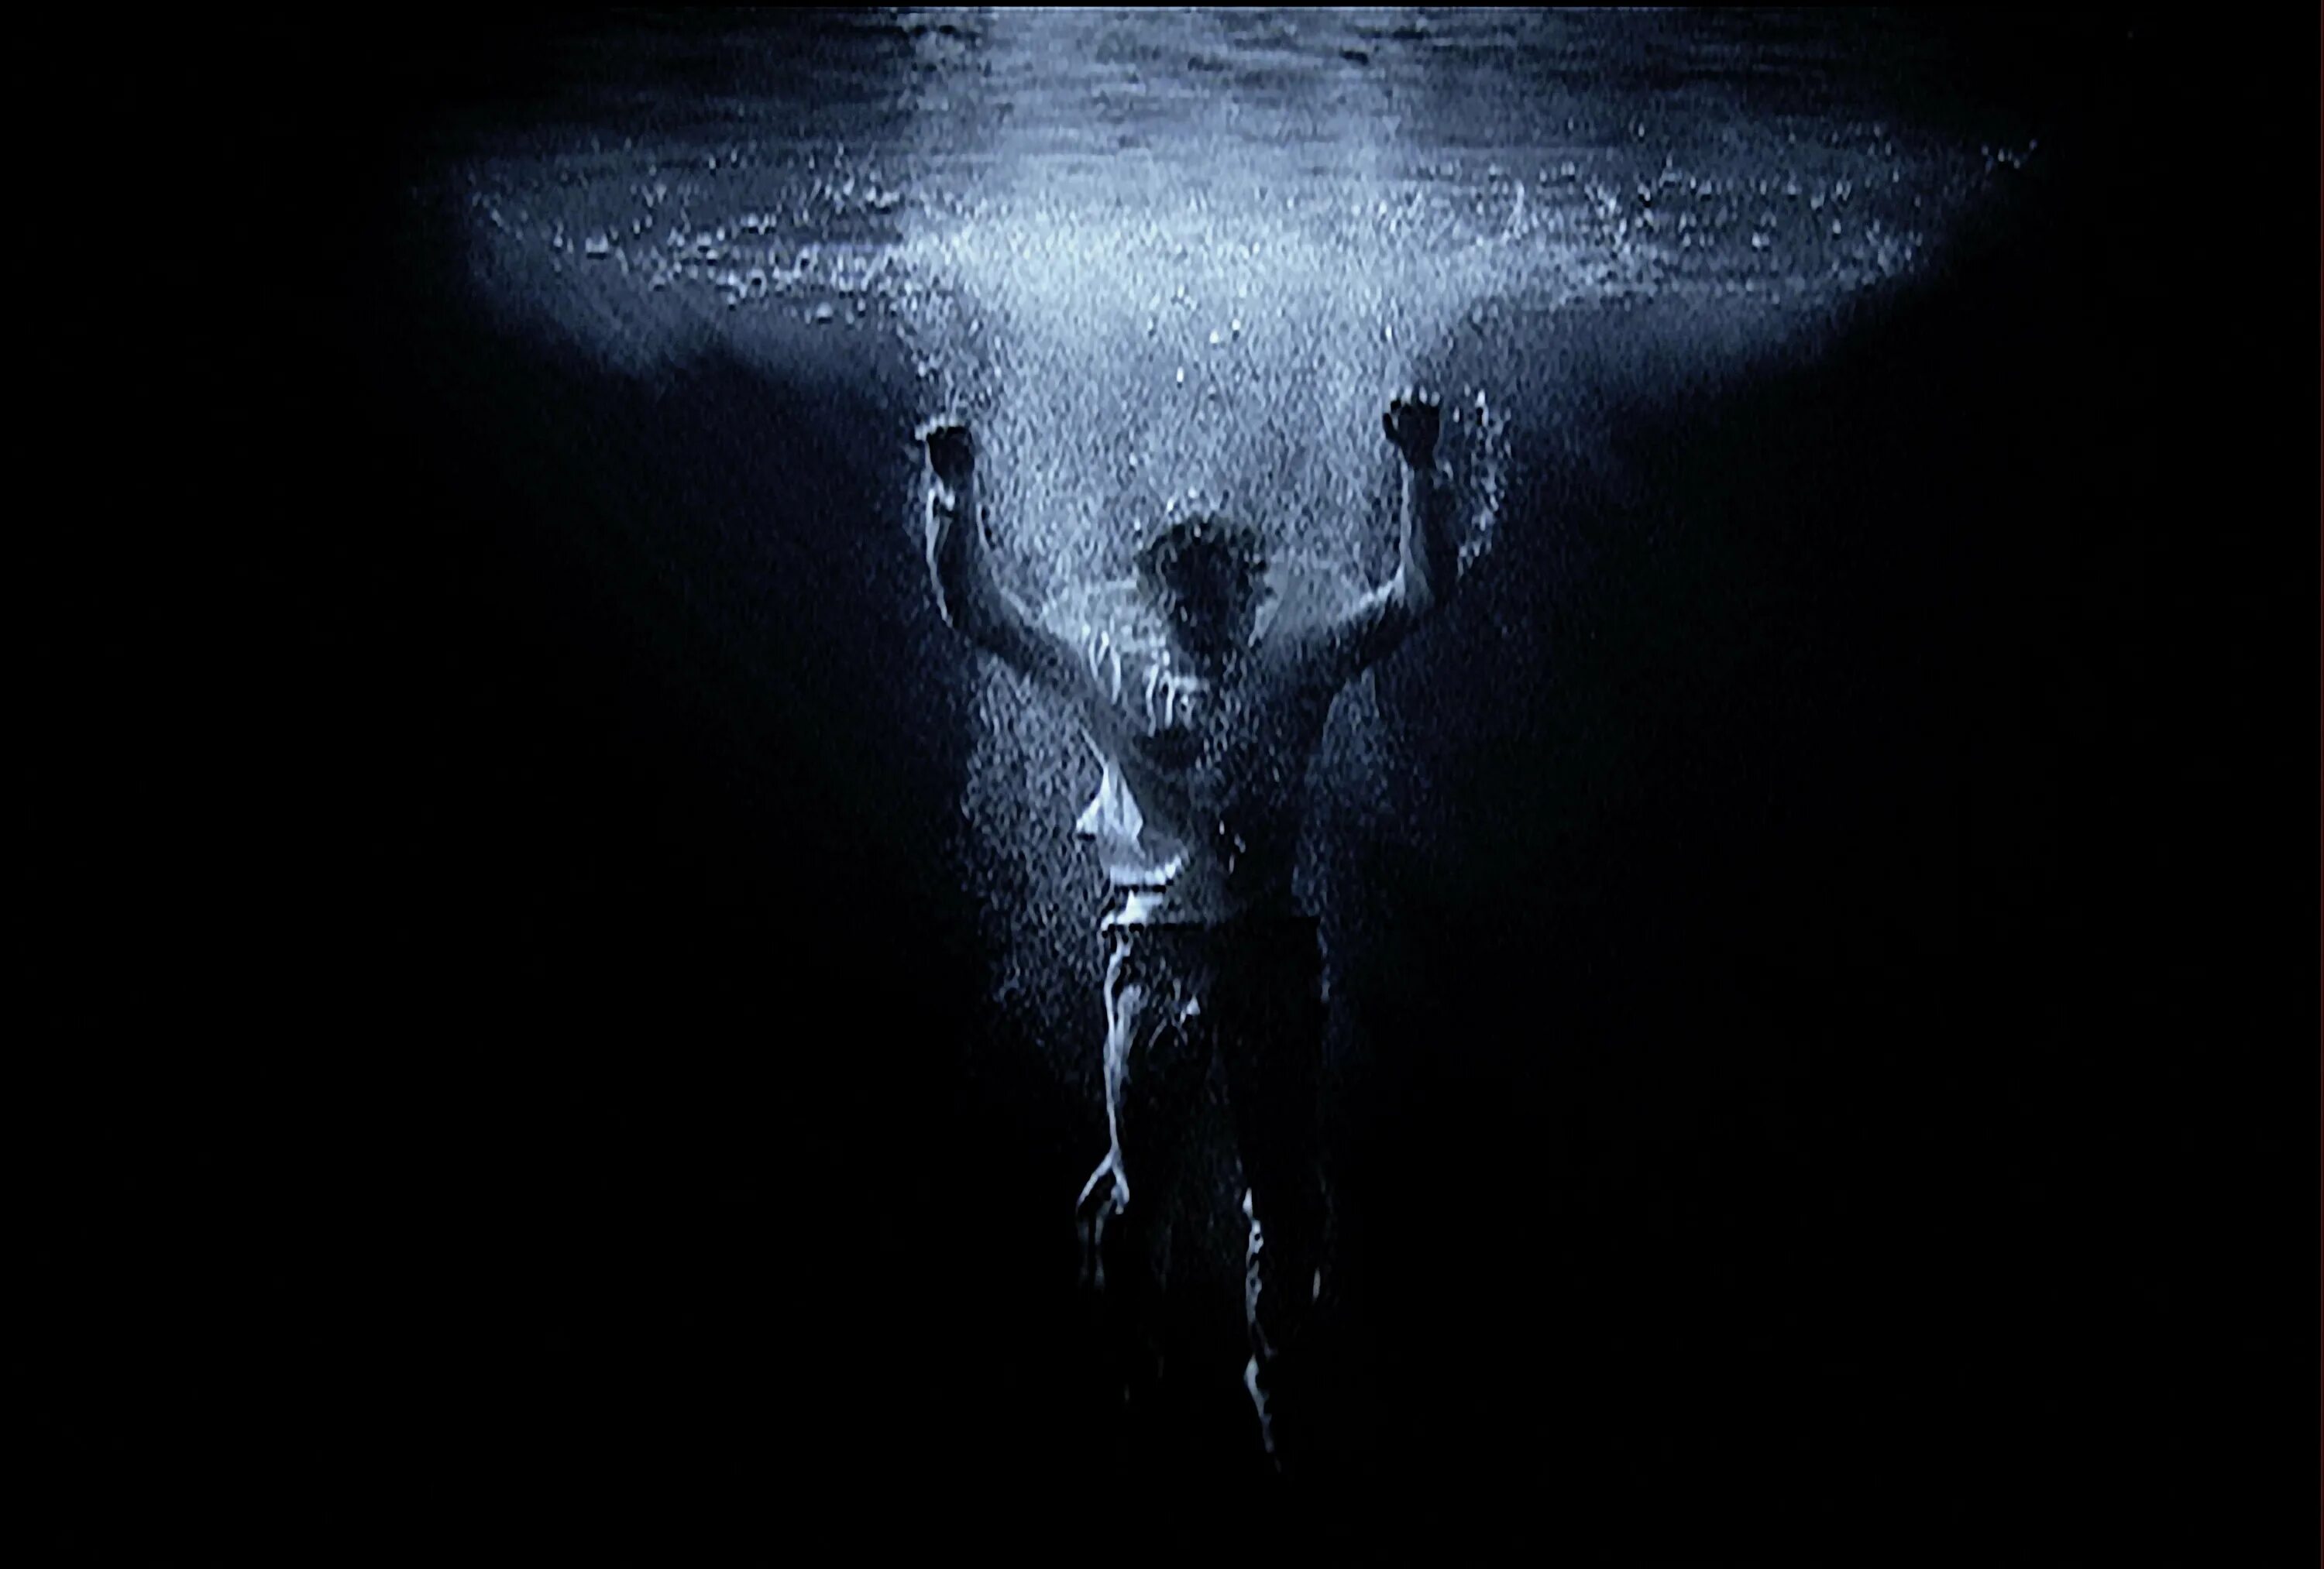 Билл Виола. Билл Виола видеоарт человек. Тонущий человек под водой. Человек тонущий во тьме. Омега утонувший во тьме